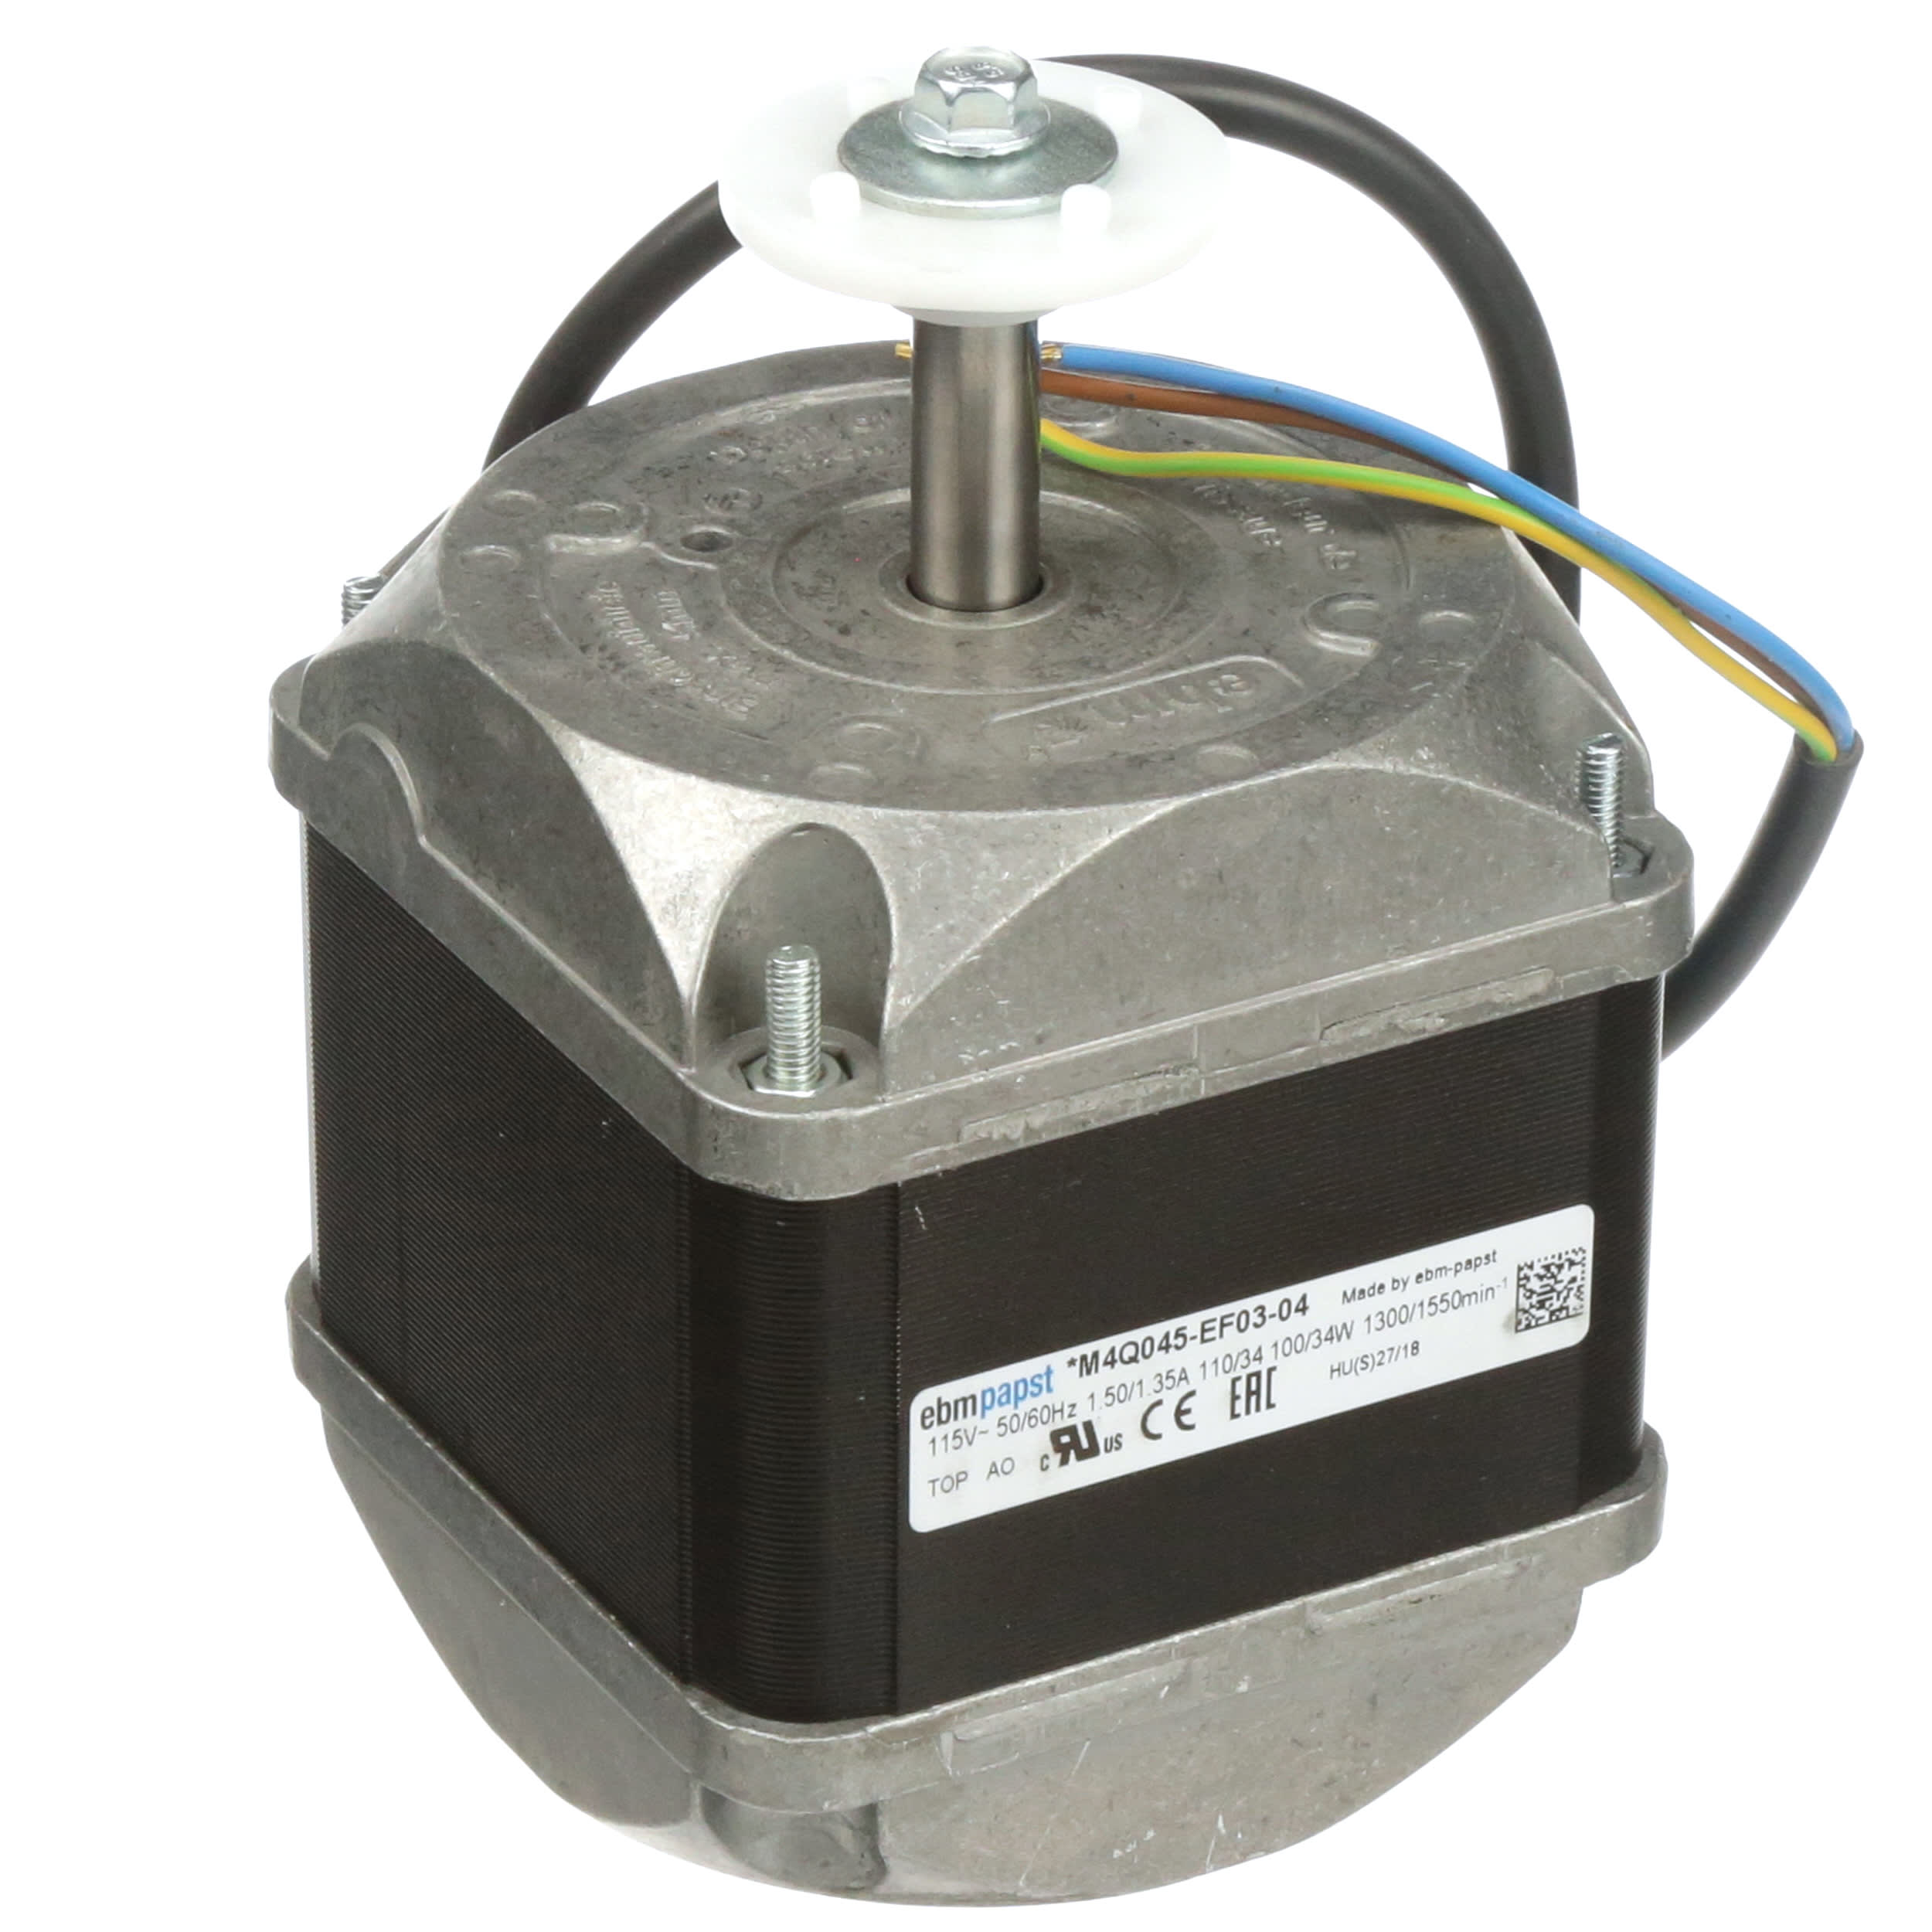 EBM PAPST Lüftermotor Kondensator-Ventilatormotor 16 W M4Q045-CF01-01 